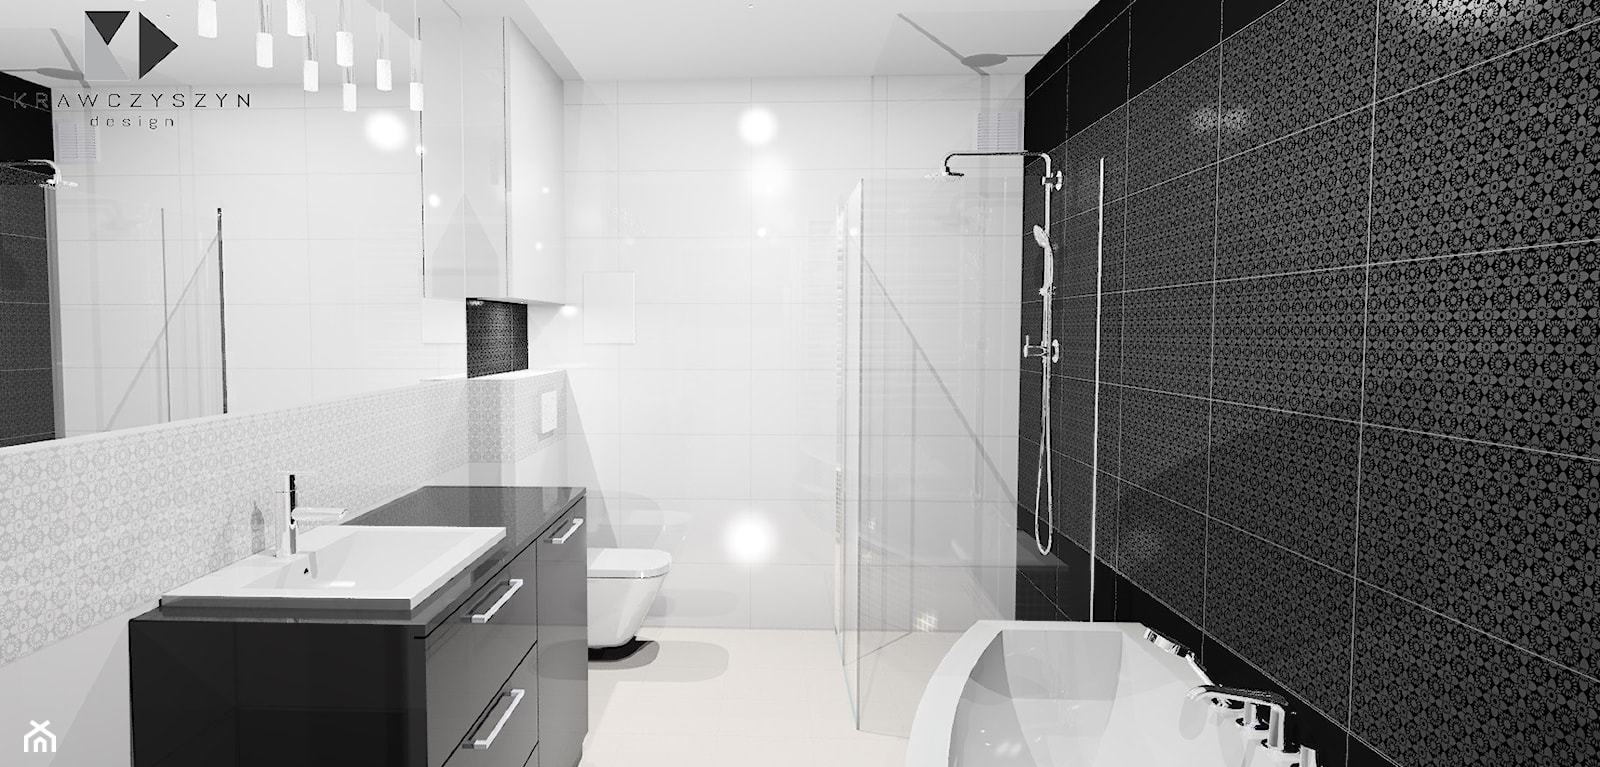 Nowoczesna łazienka Black&White - Łazienka, styl nowoczesny - zdjęcie od Krawczyszyn-design - Homebook